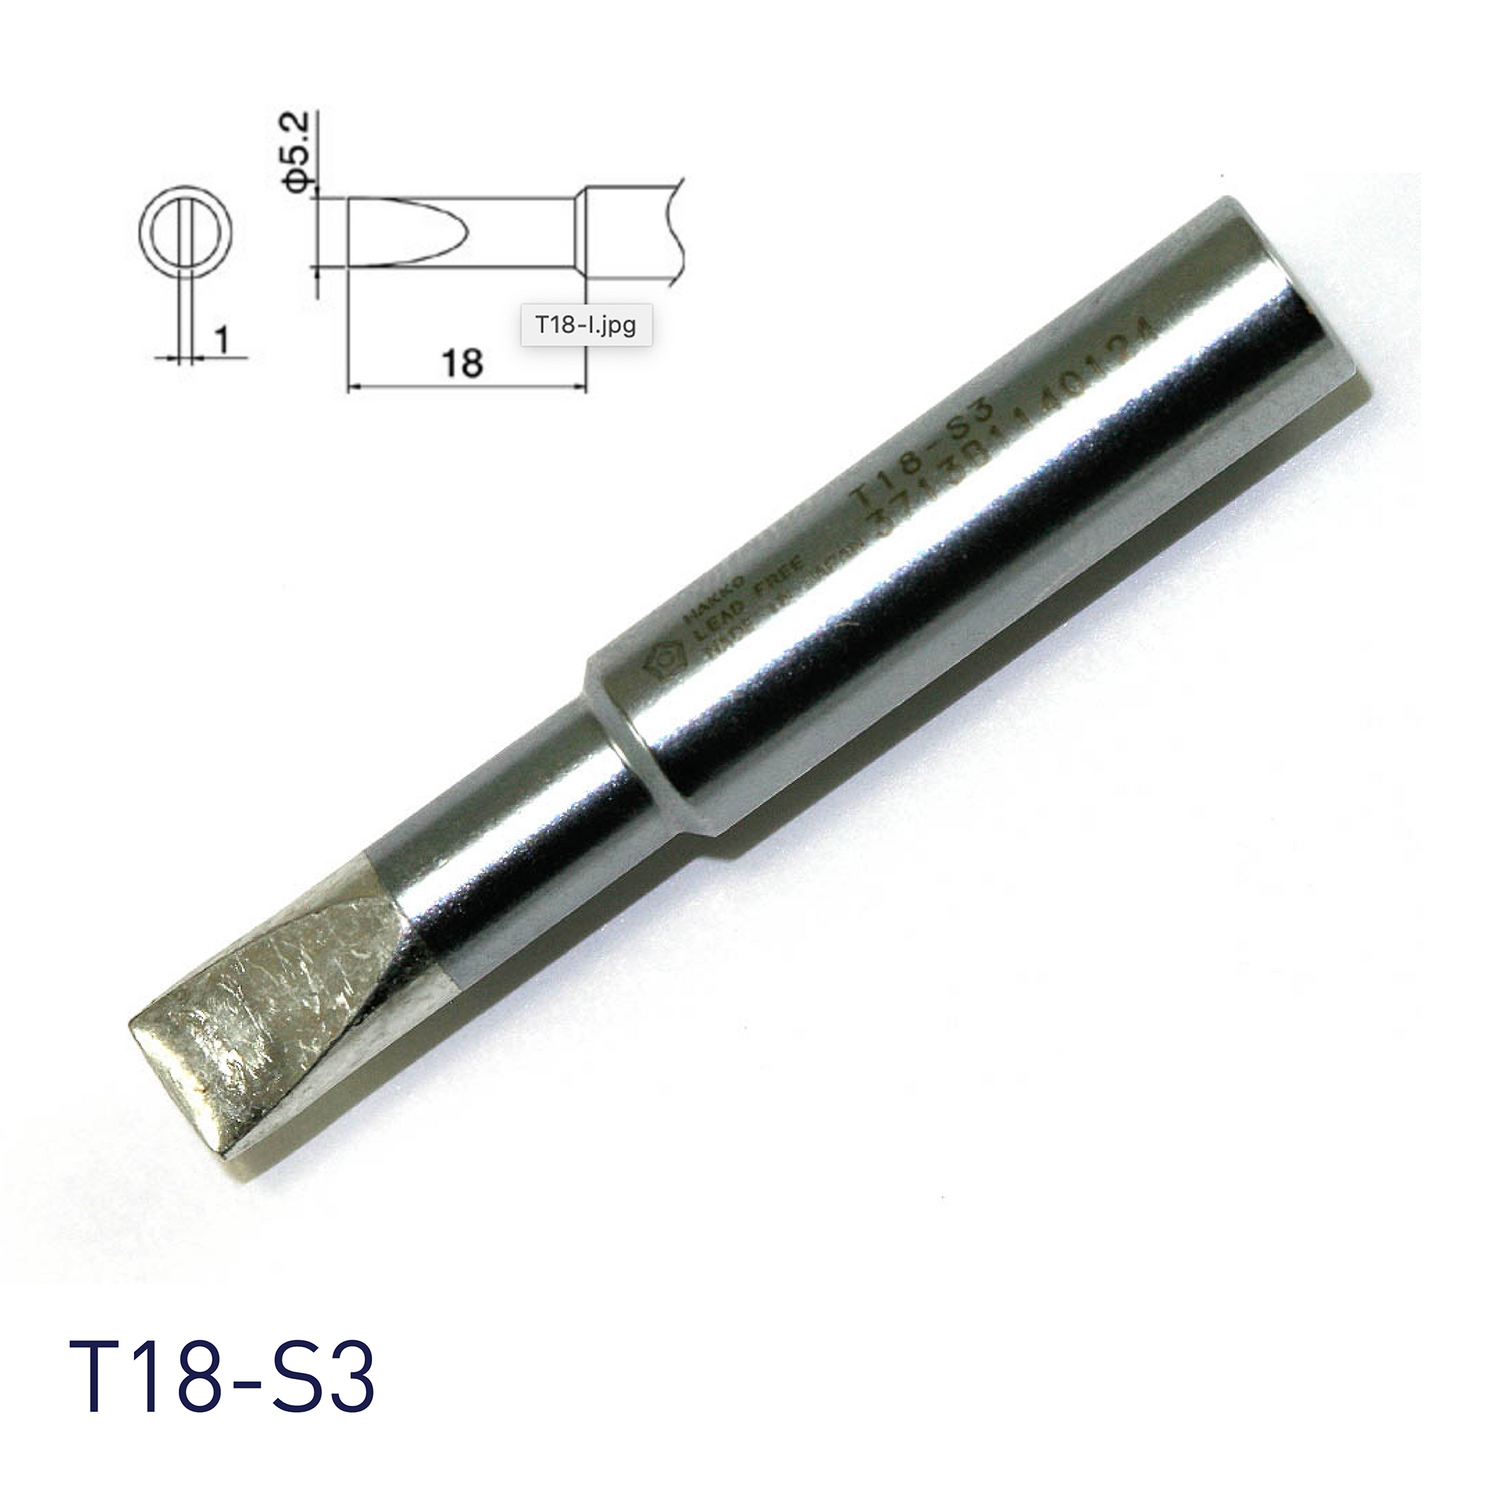 Hakko soldering iron tip T18-S3 for soldering station FX888, FX888D, FX889, FR701, FR702, FX600 & soldering iron FX8801, FX600